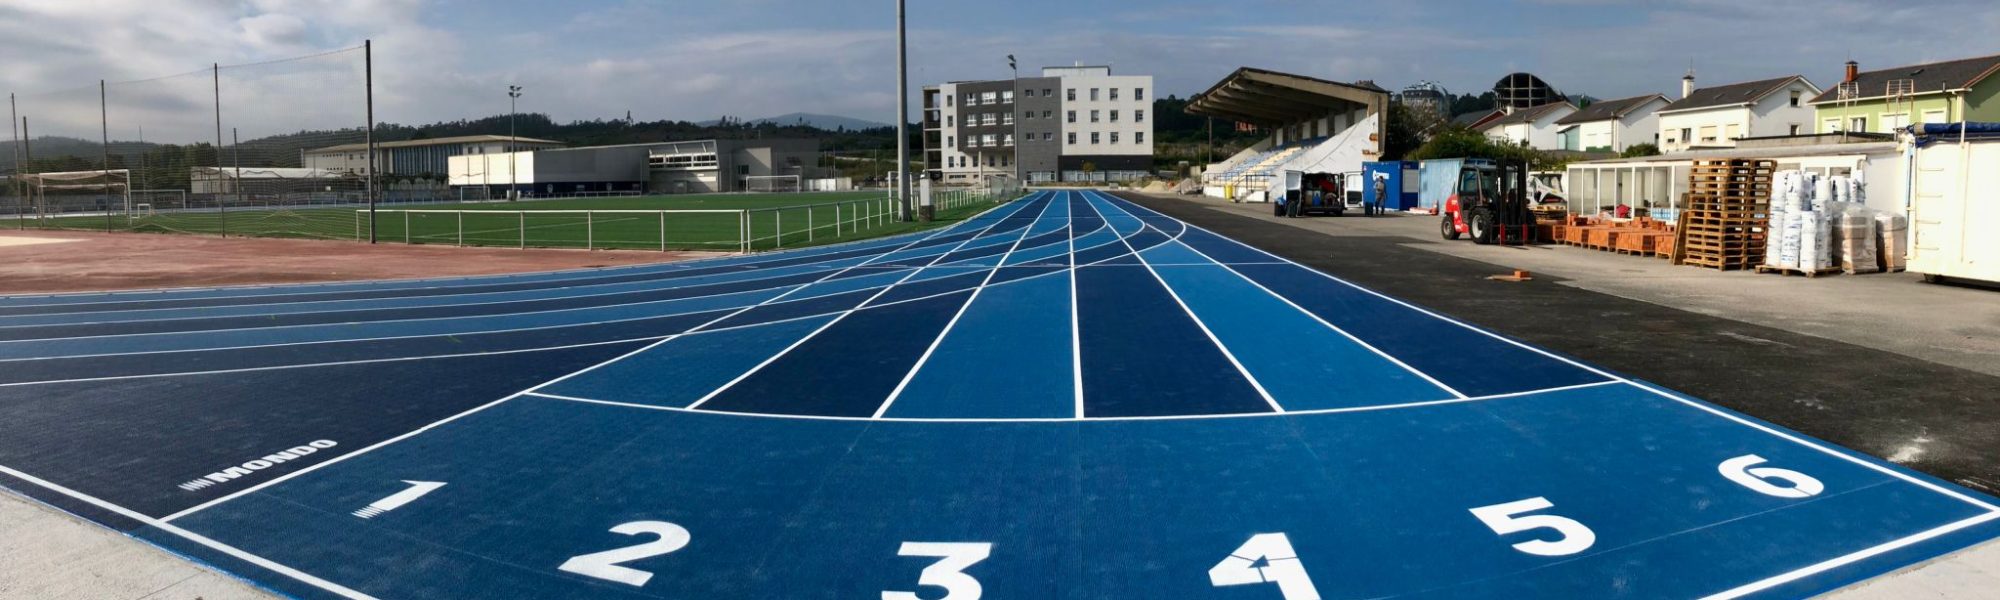 Estadio Municipal de A Veiga, ubicado en la localidad de San Cibrao, equipado con pavimento Sportflex Super X 720 de Mondo